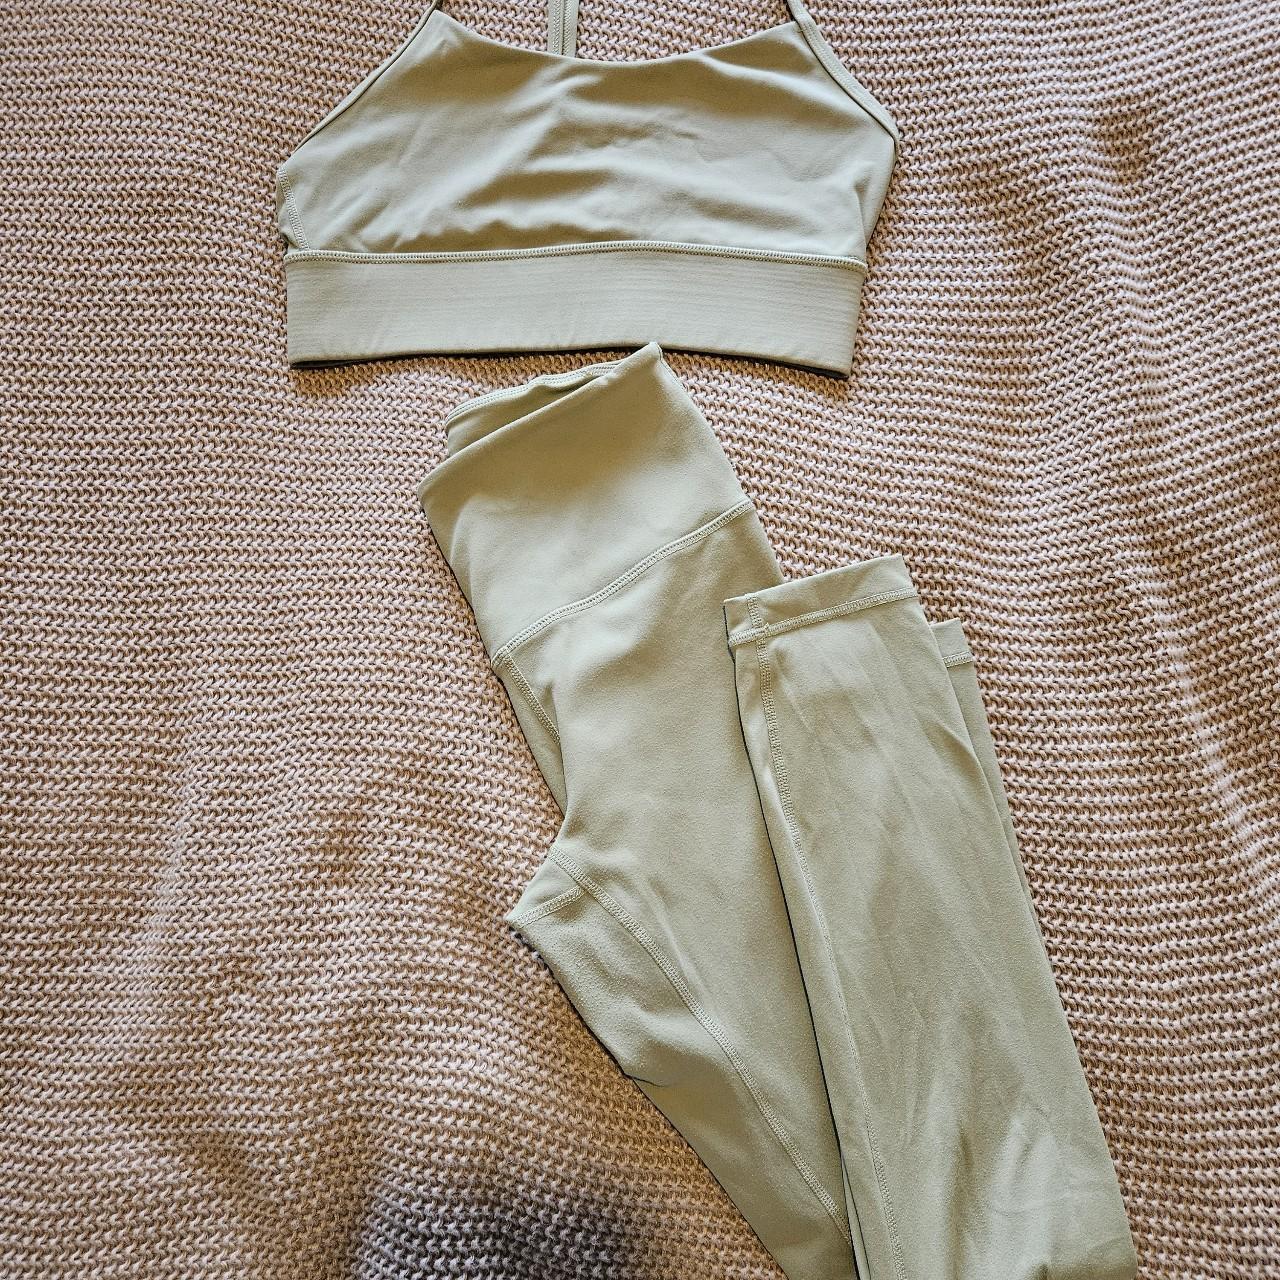 TALA skinluxe leggings and matching top in cedar - Depop